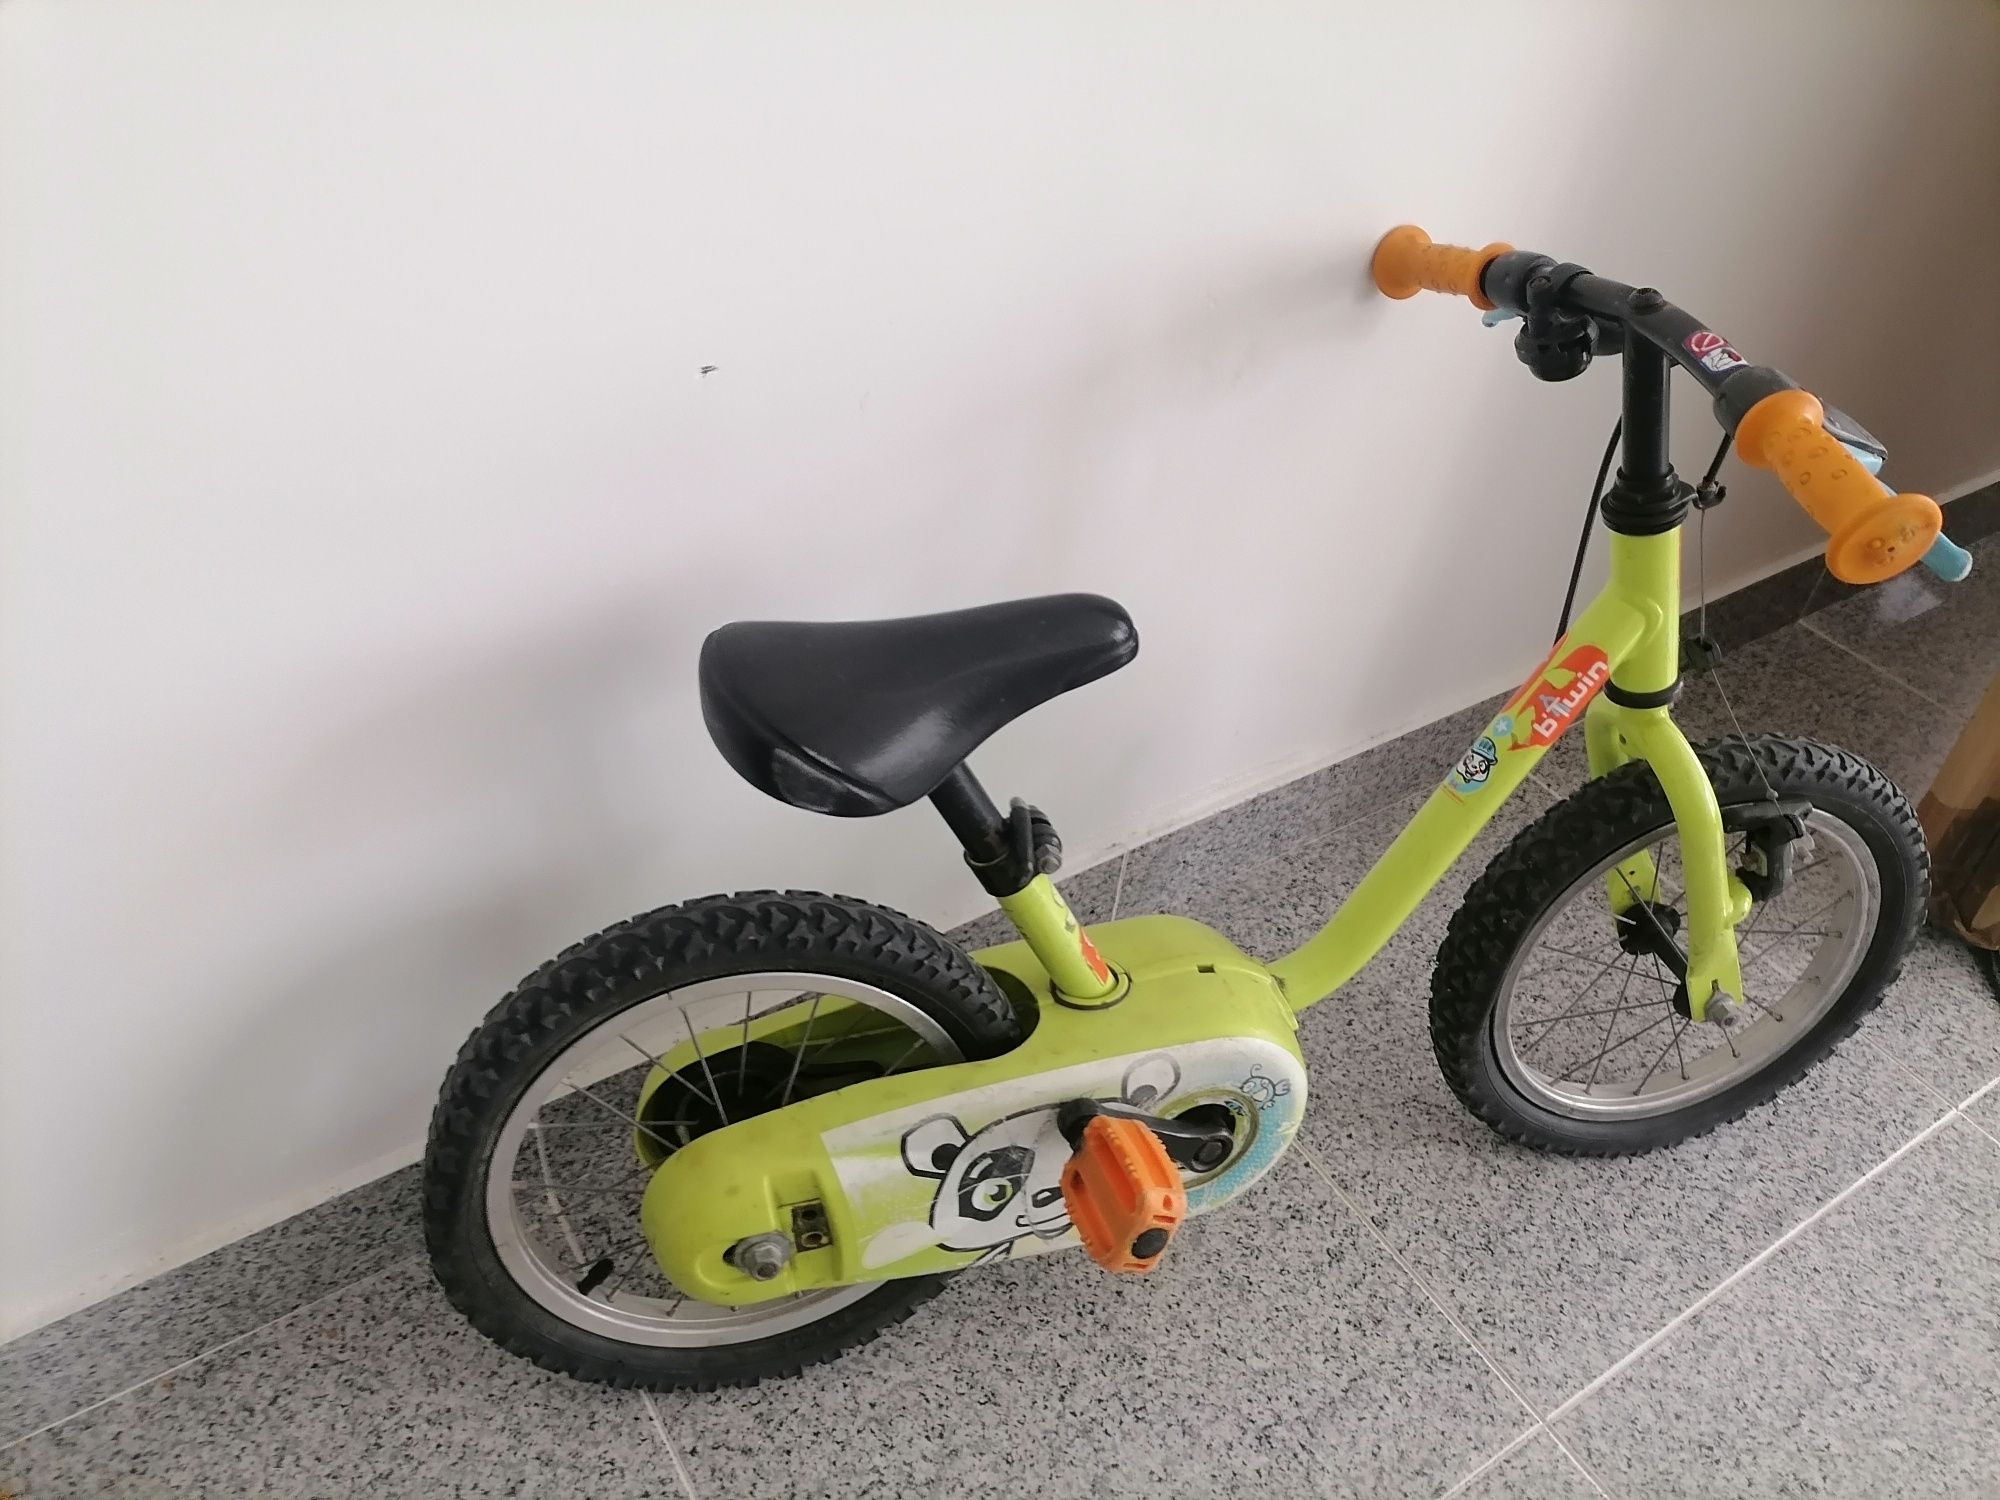 Bicicleta criança - 15€